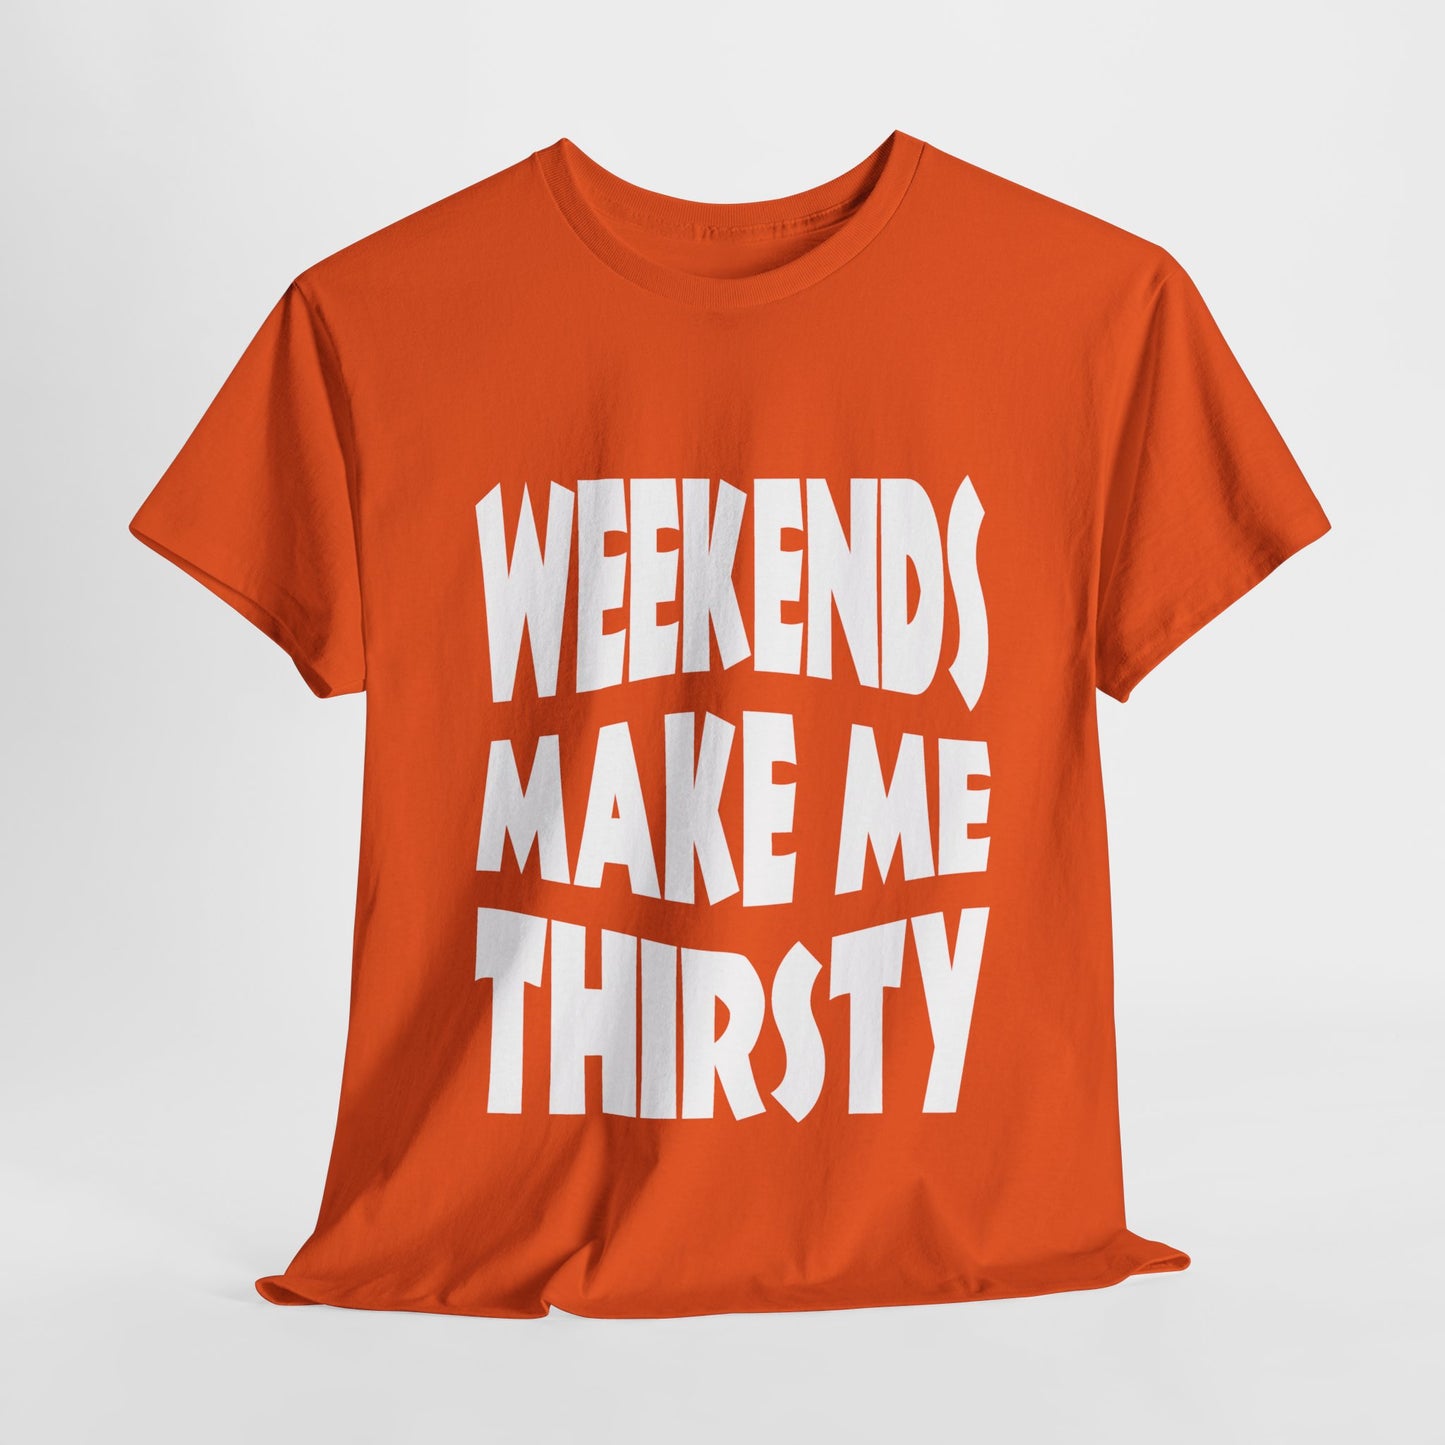 WEEKENDS Make Me THIRSTY - Gildan 5000 Unisex T-shirt